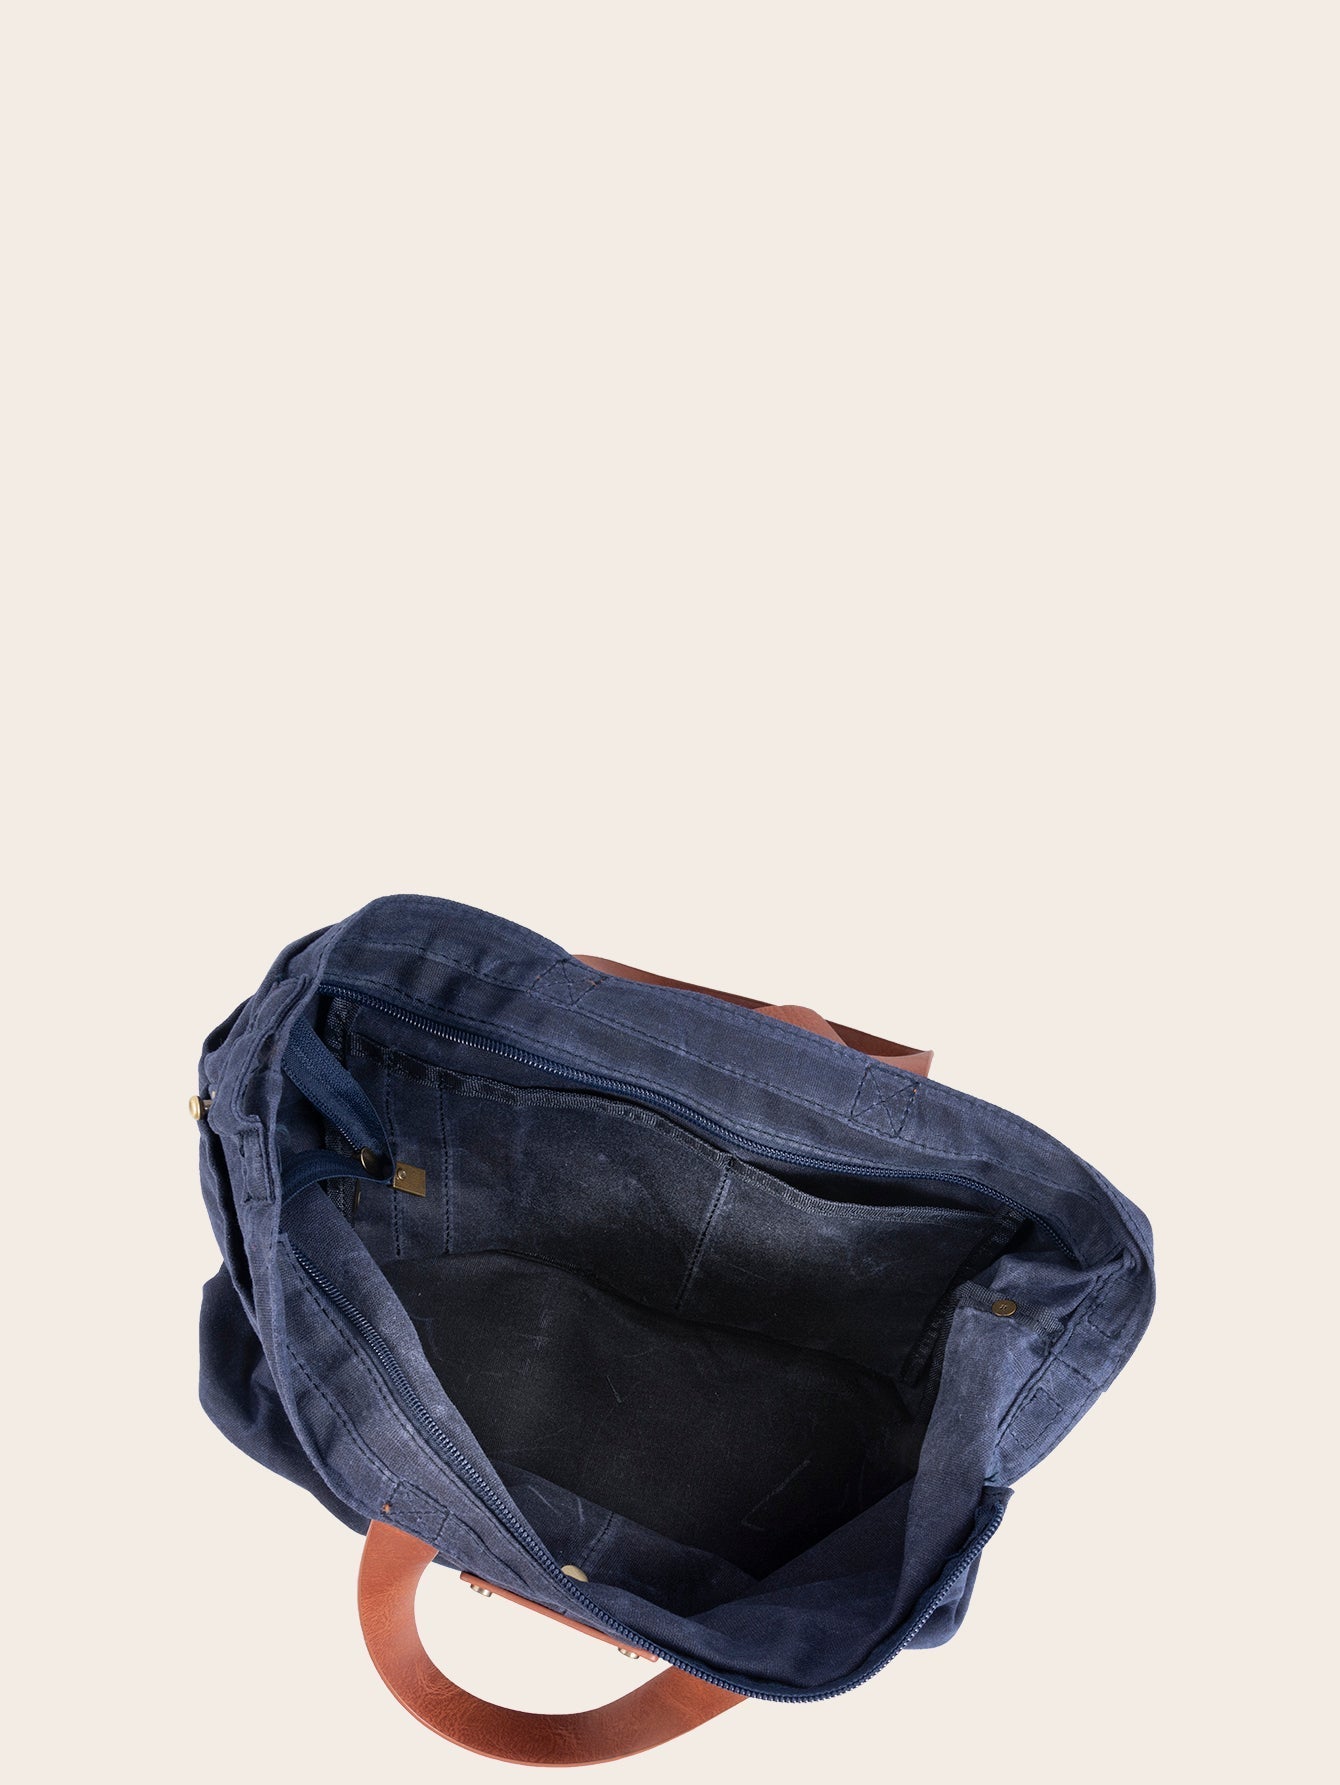 Women Denim Cloth Adjustable Shoulder Bag Large Storage Handbag Tote Bag Sai Feel